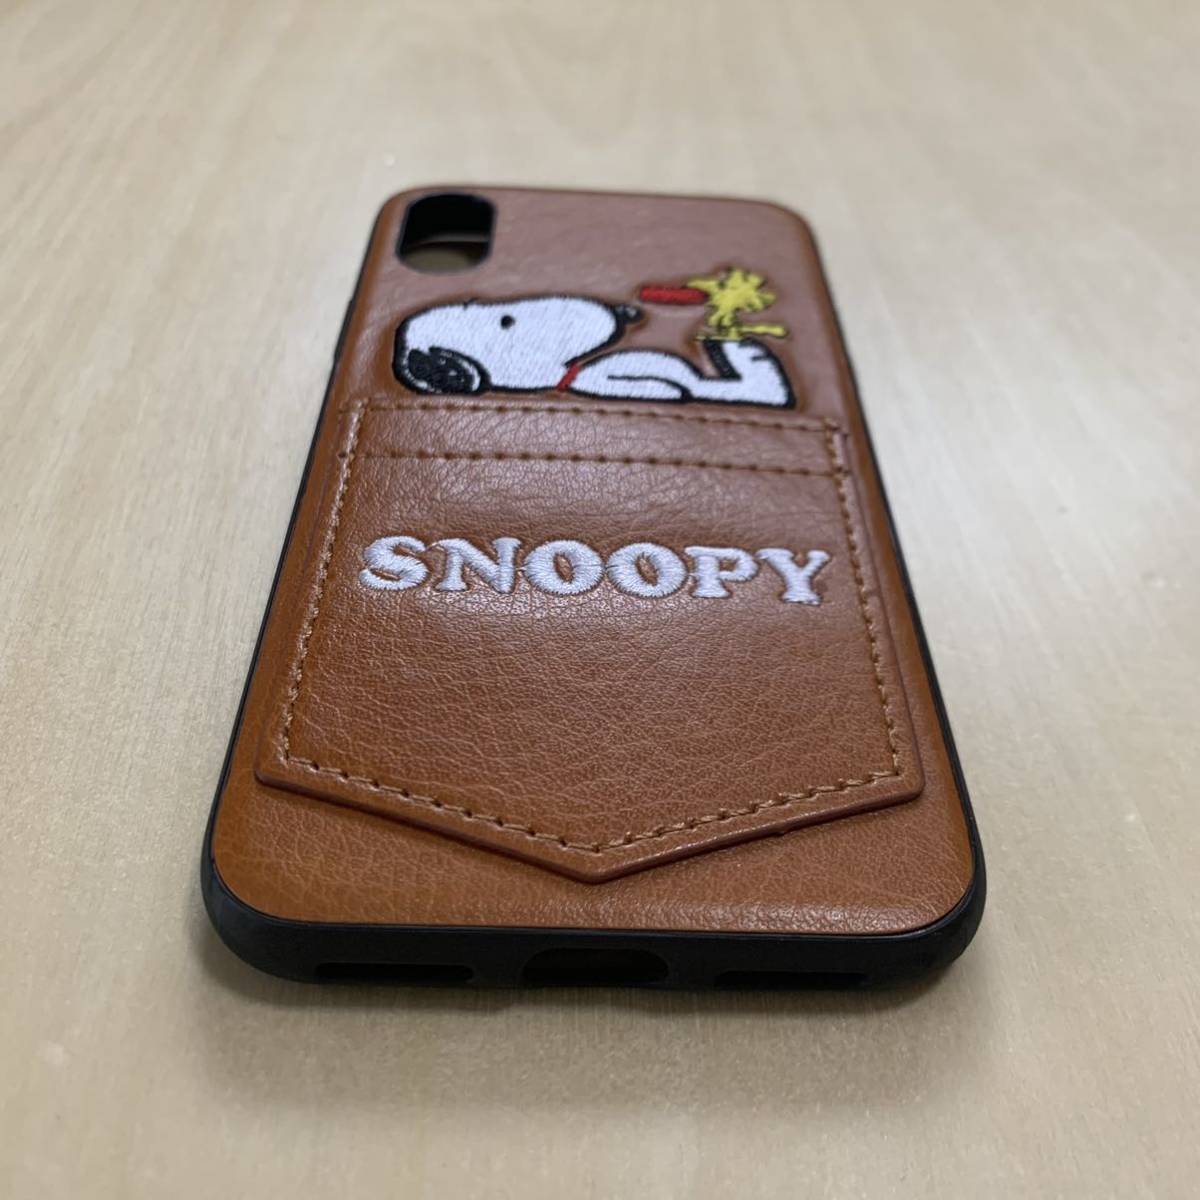 [iPhone X/XS для ] Snoopy кейс покрытие Brown / I ho n/ iPhone / iPhone / защита / Junk предотвращение / плёнка / смартфон / кожа 